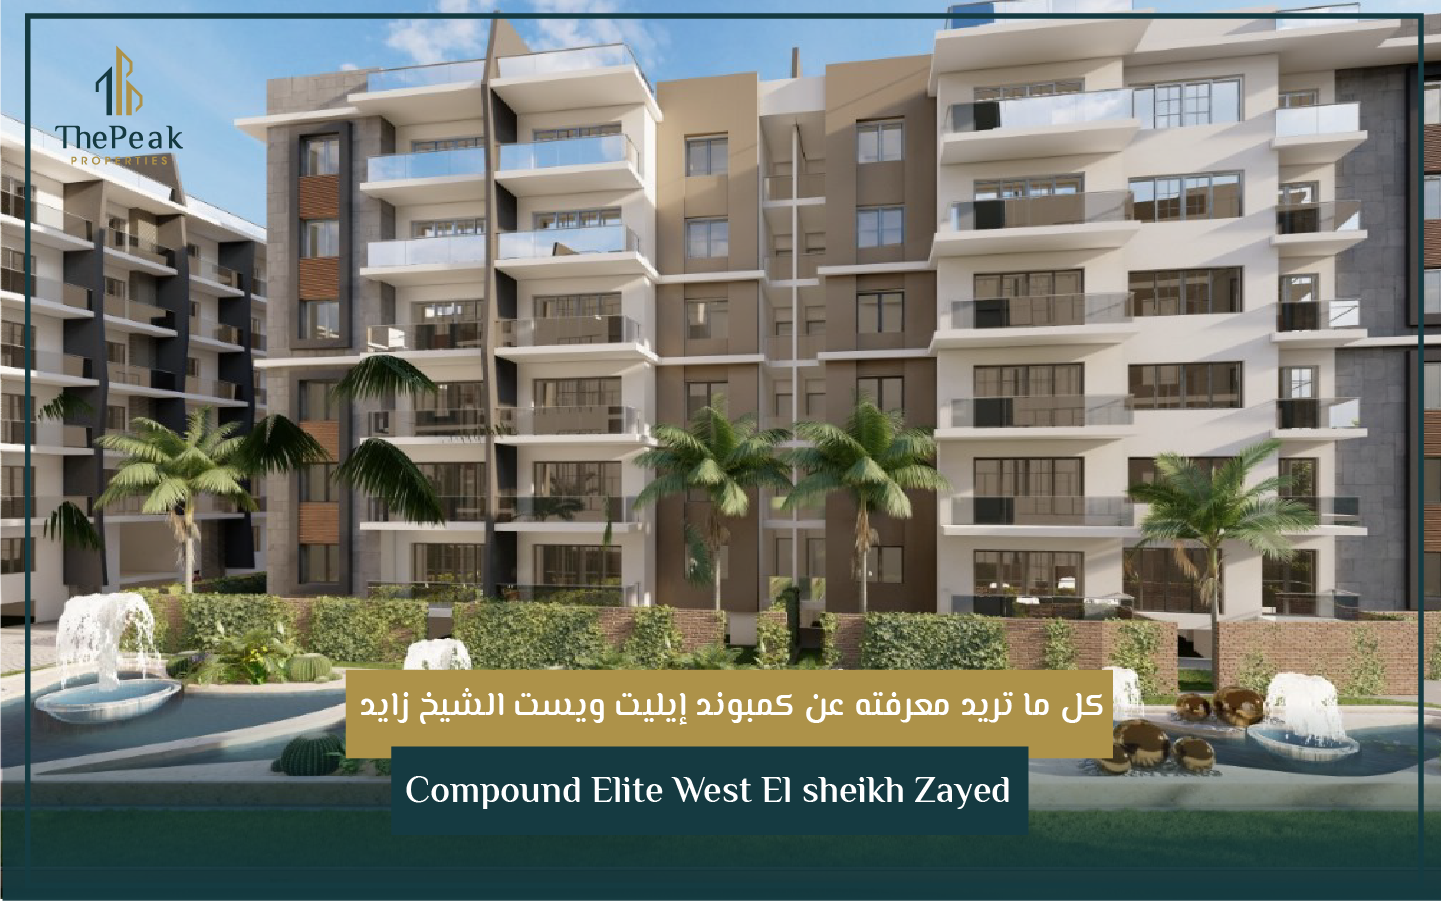 "شقة للبيع بالتقسيط في الشيخ زايد  مساحة 207 متر  مقدم 15 % و تقسيط يصل إلي 8 سنوات  في مشروع Compound Elite West El sheikh Zayed" | THE PEAK PROPERTIES